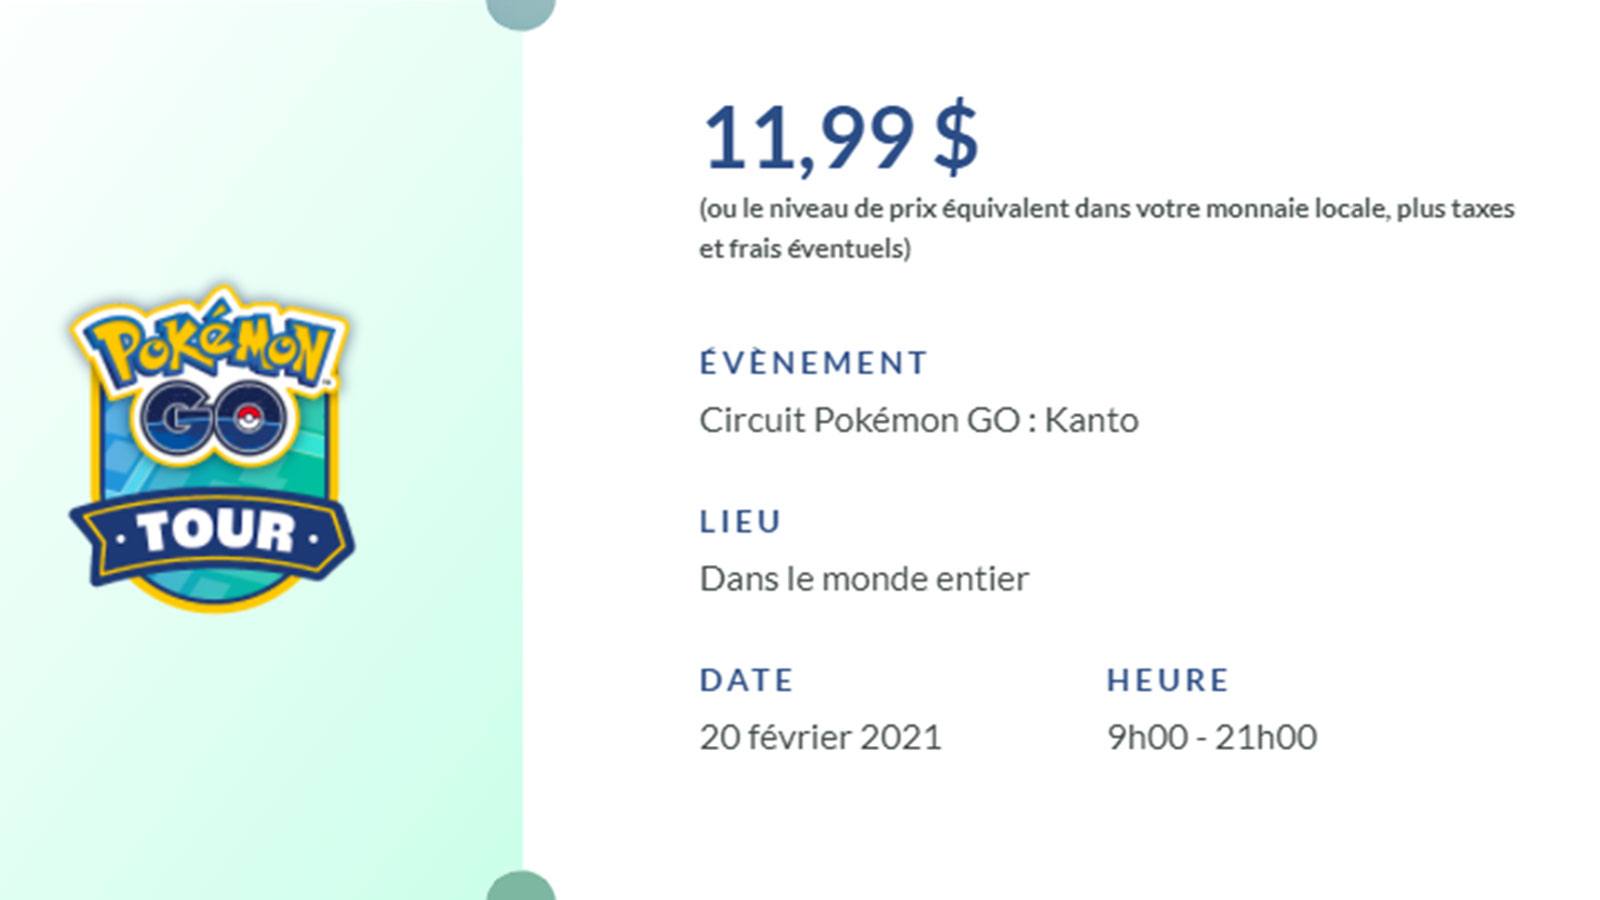 Pokémon Go Tour billet détails Niantic